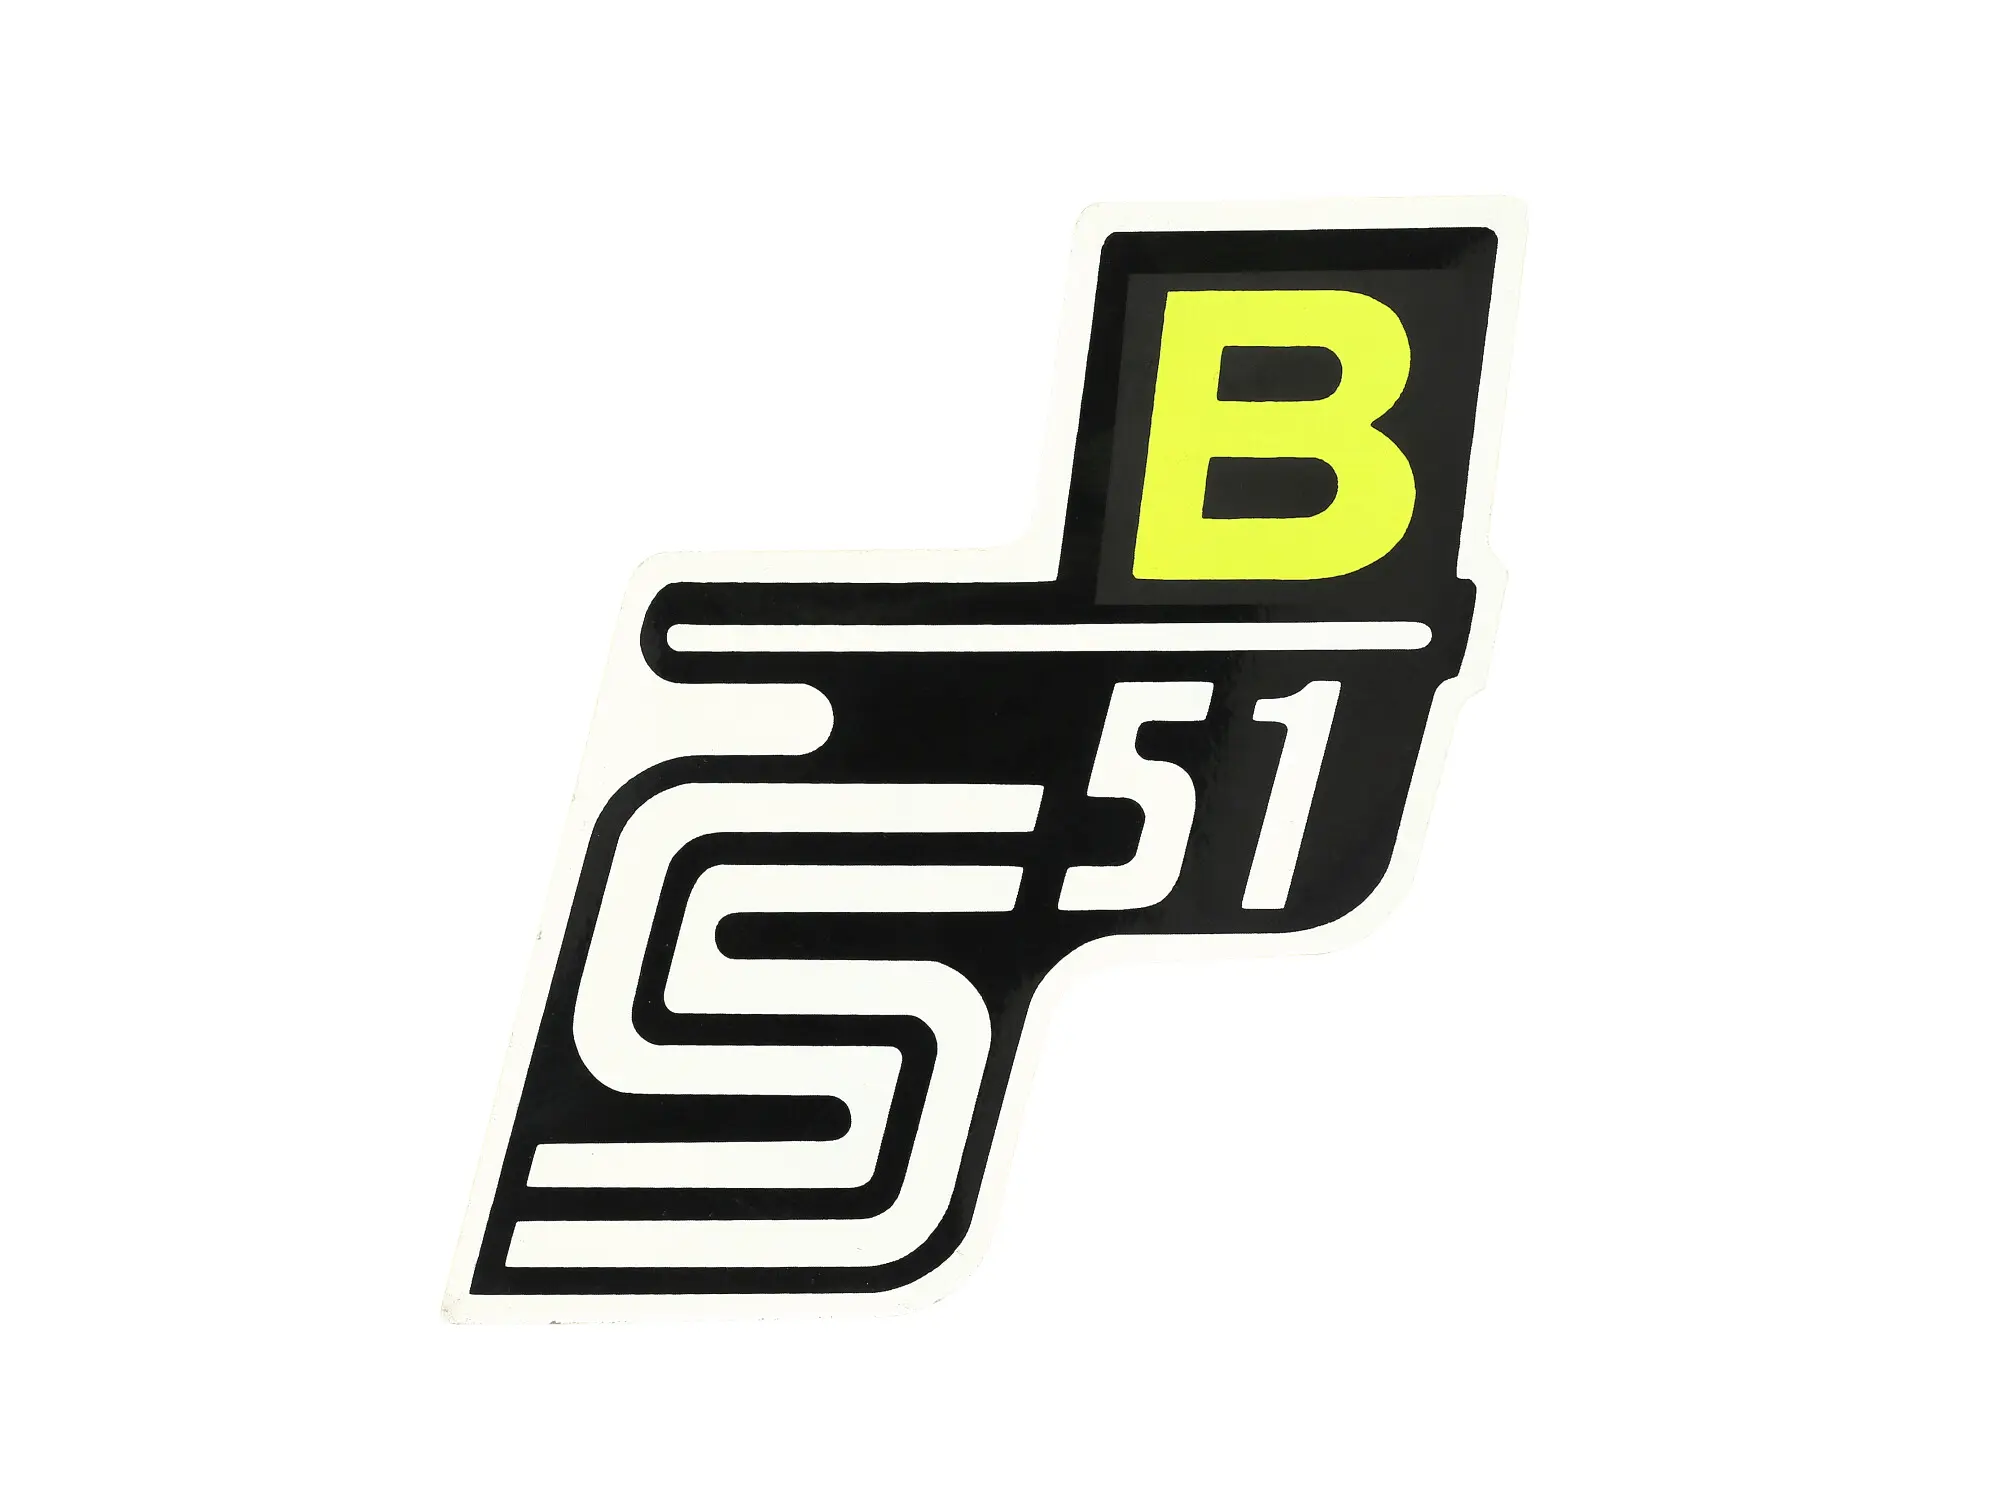 Klebefolie Seitendeckel "S51 B" - Neongelb, Art.-Nr.: 10002919 - Bild 1